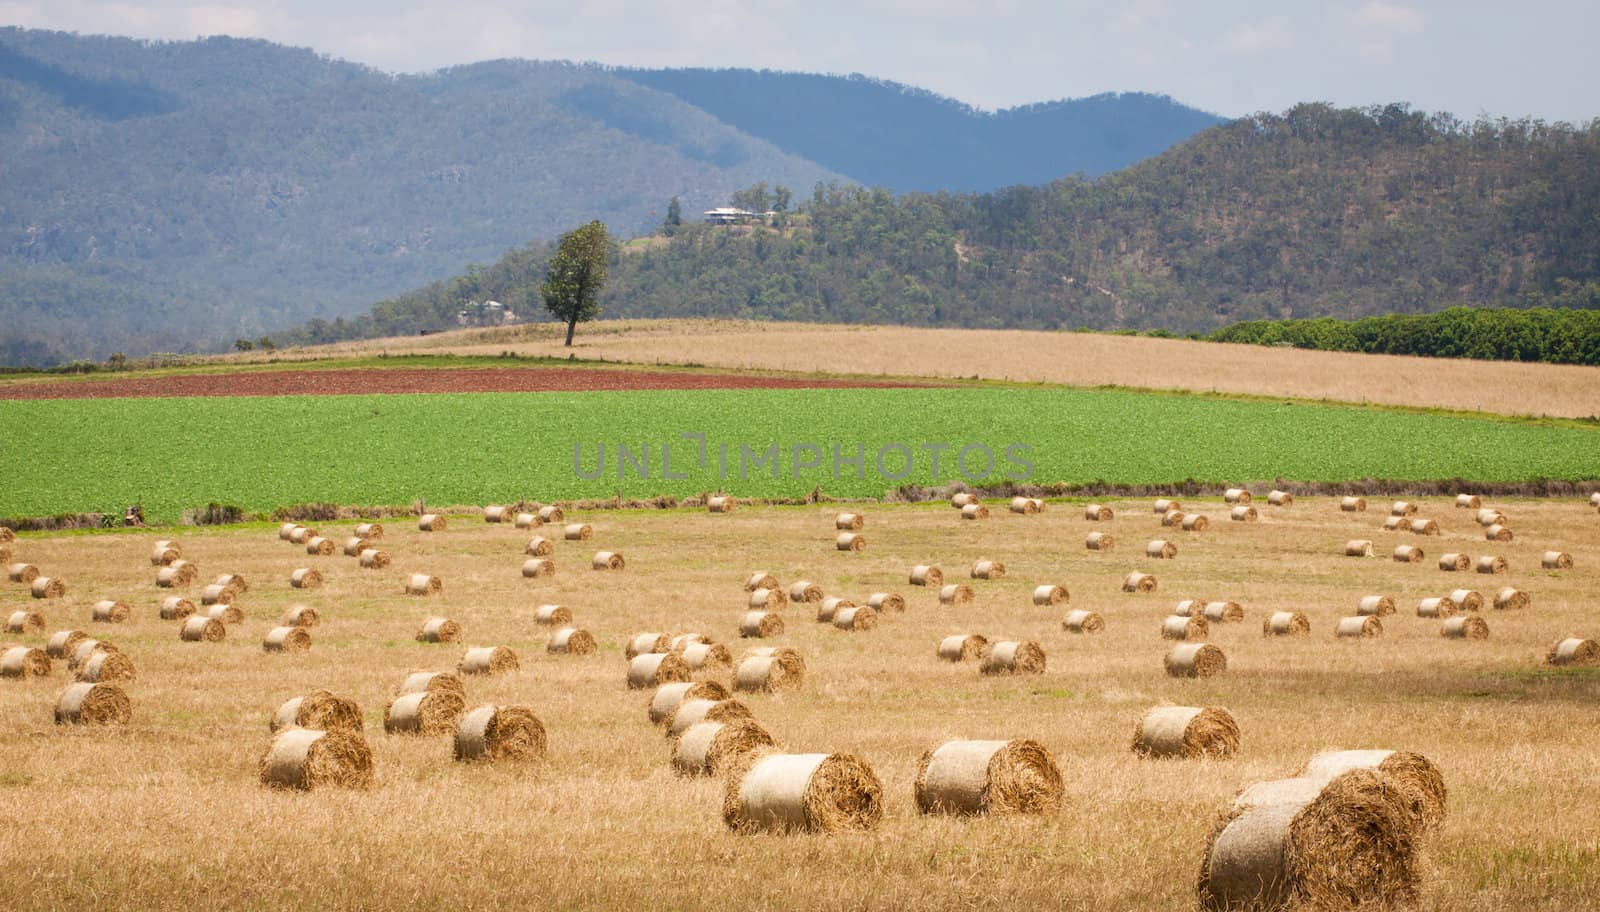 Hay bales in a field by Jaykayl